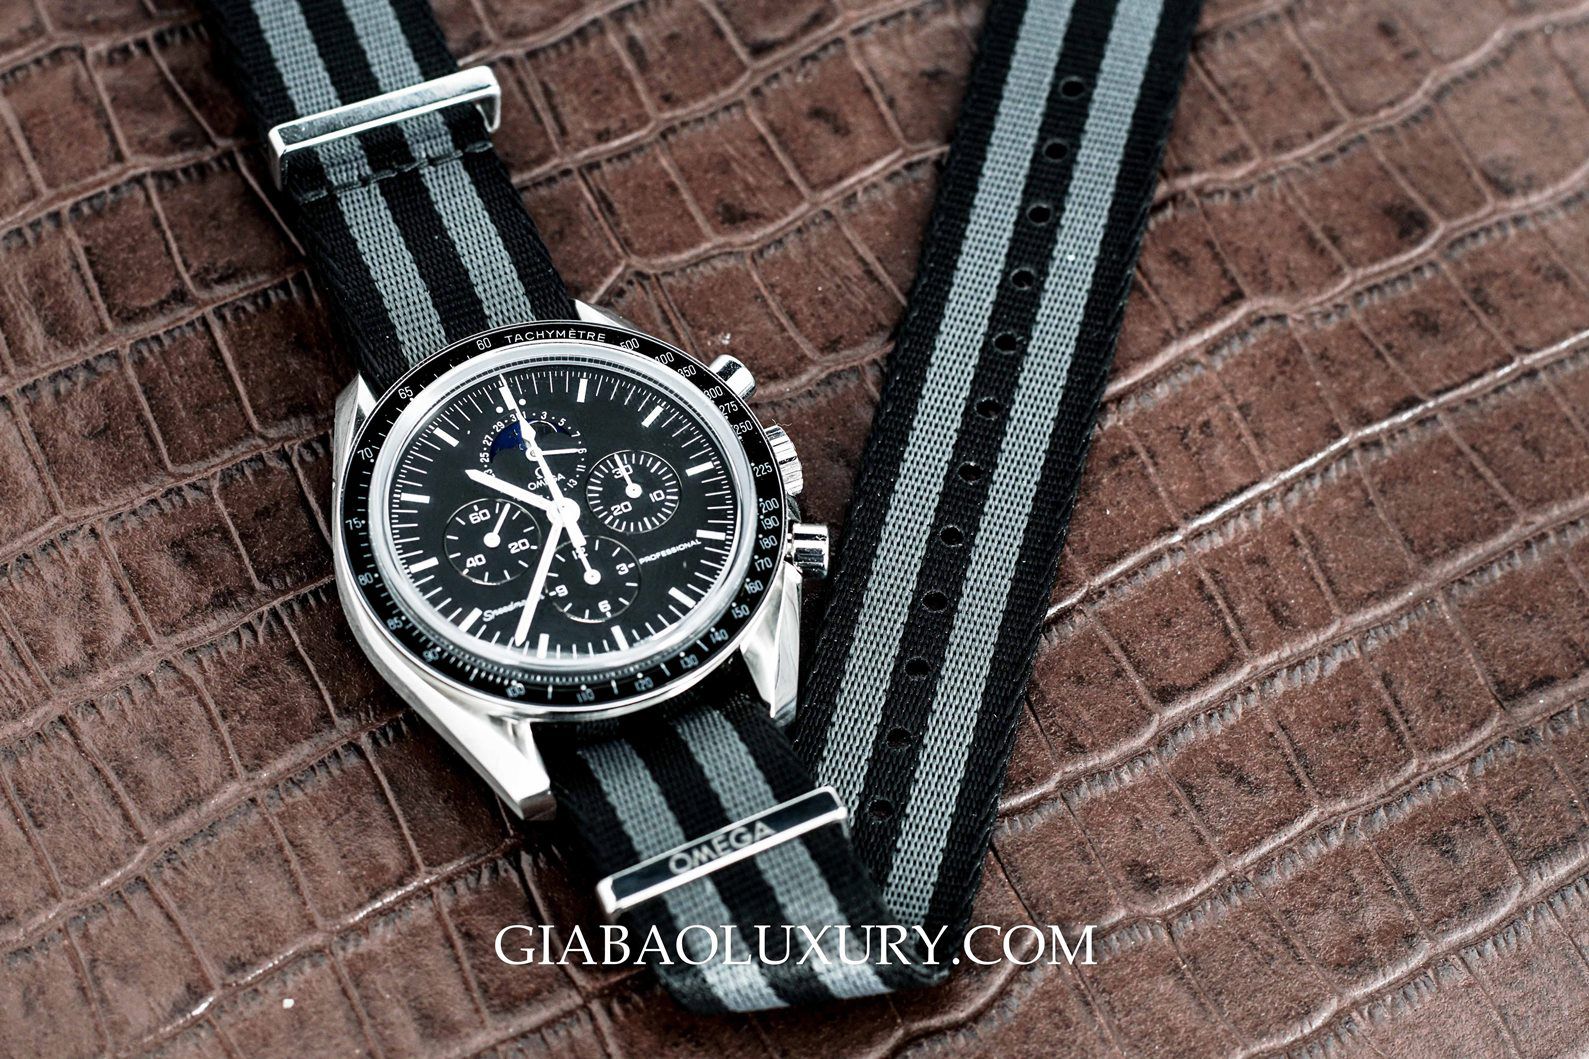 Gia Bảo Luxury cung cấp dịch vụ thu mua đồng hồ Omega Speedmaster chính hãng toàn quốc